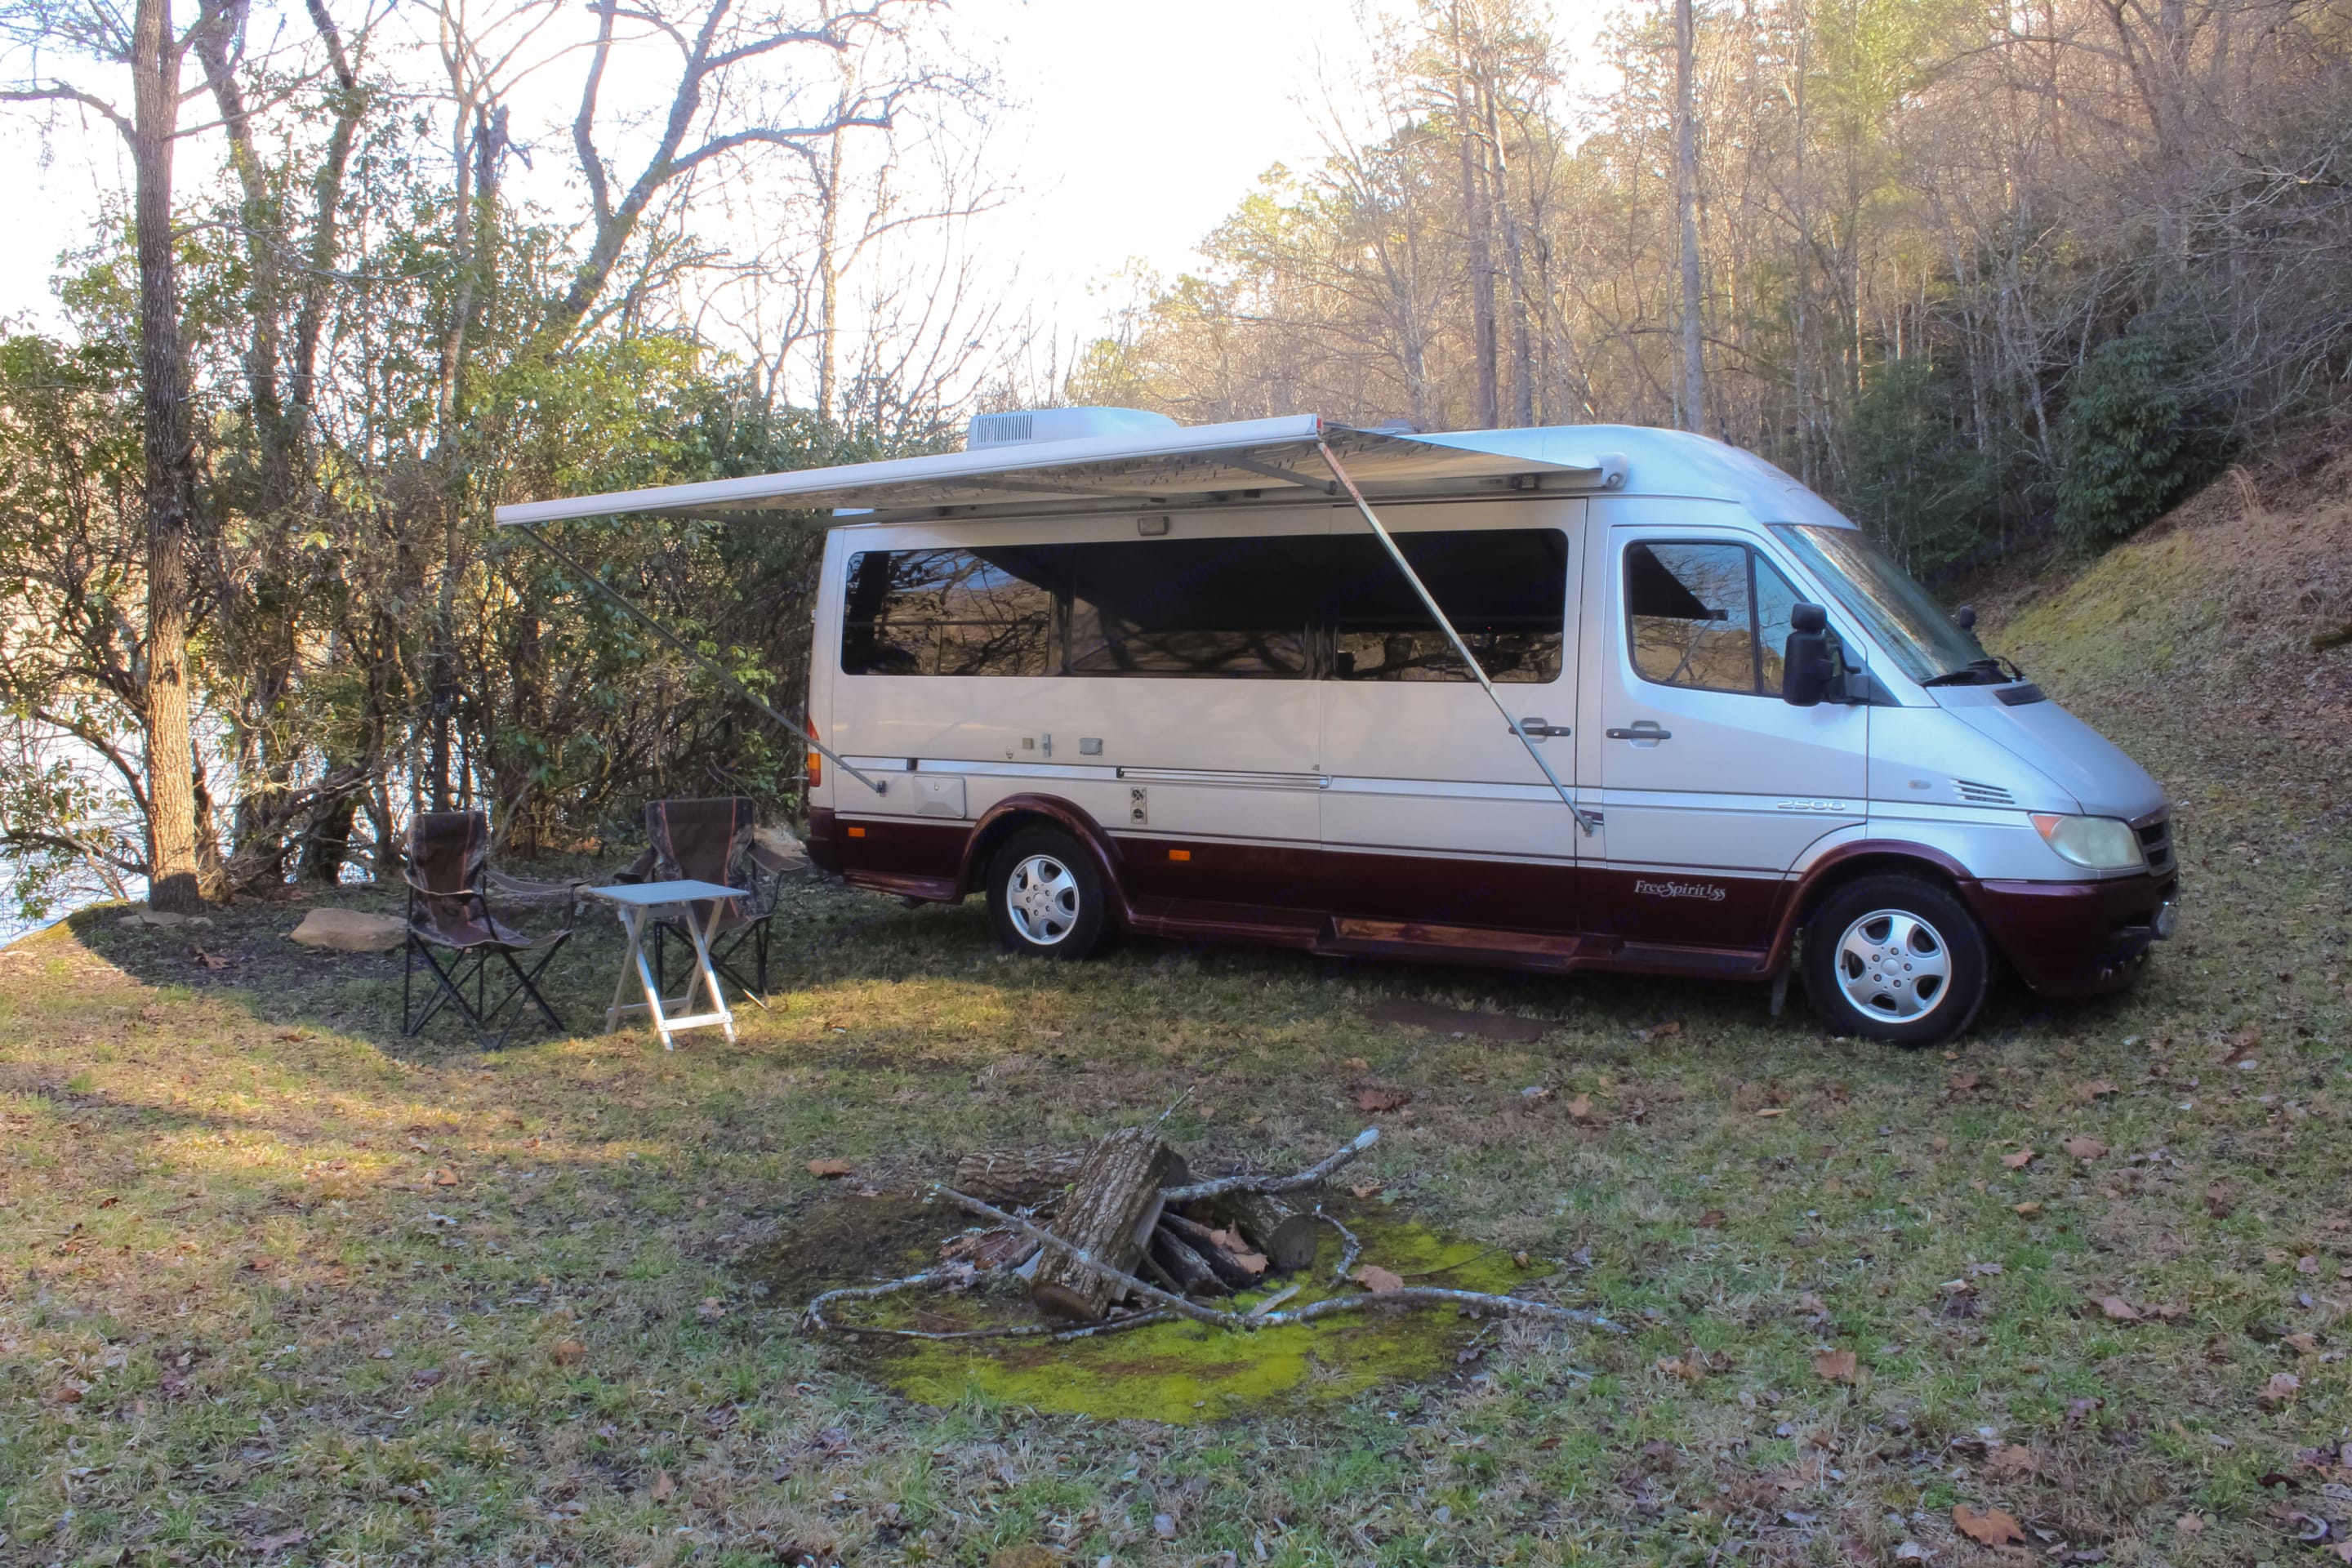 Socialist Rektangel Reparation mulig 2006 Free Spirit Leisure Travel Camper Van Rental in Franklin, NC |  Outdoorsy